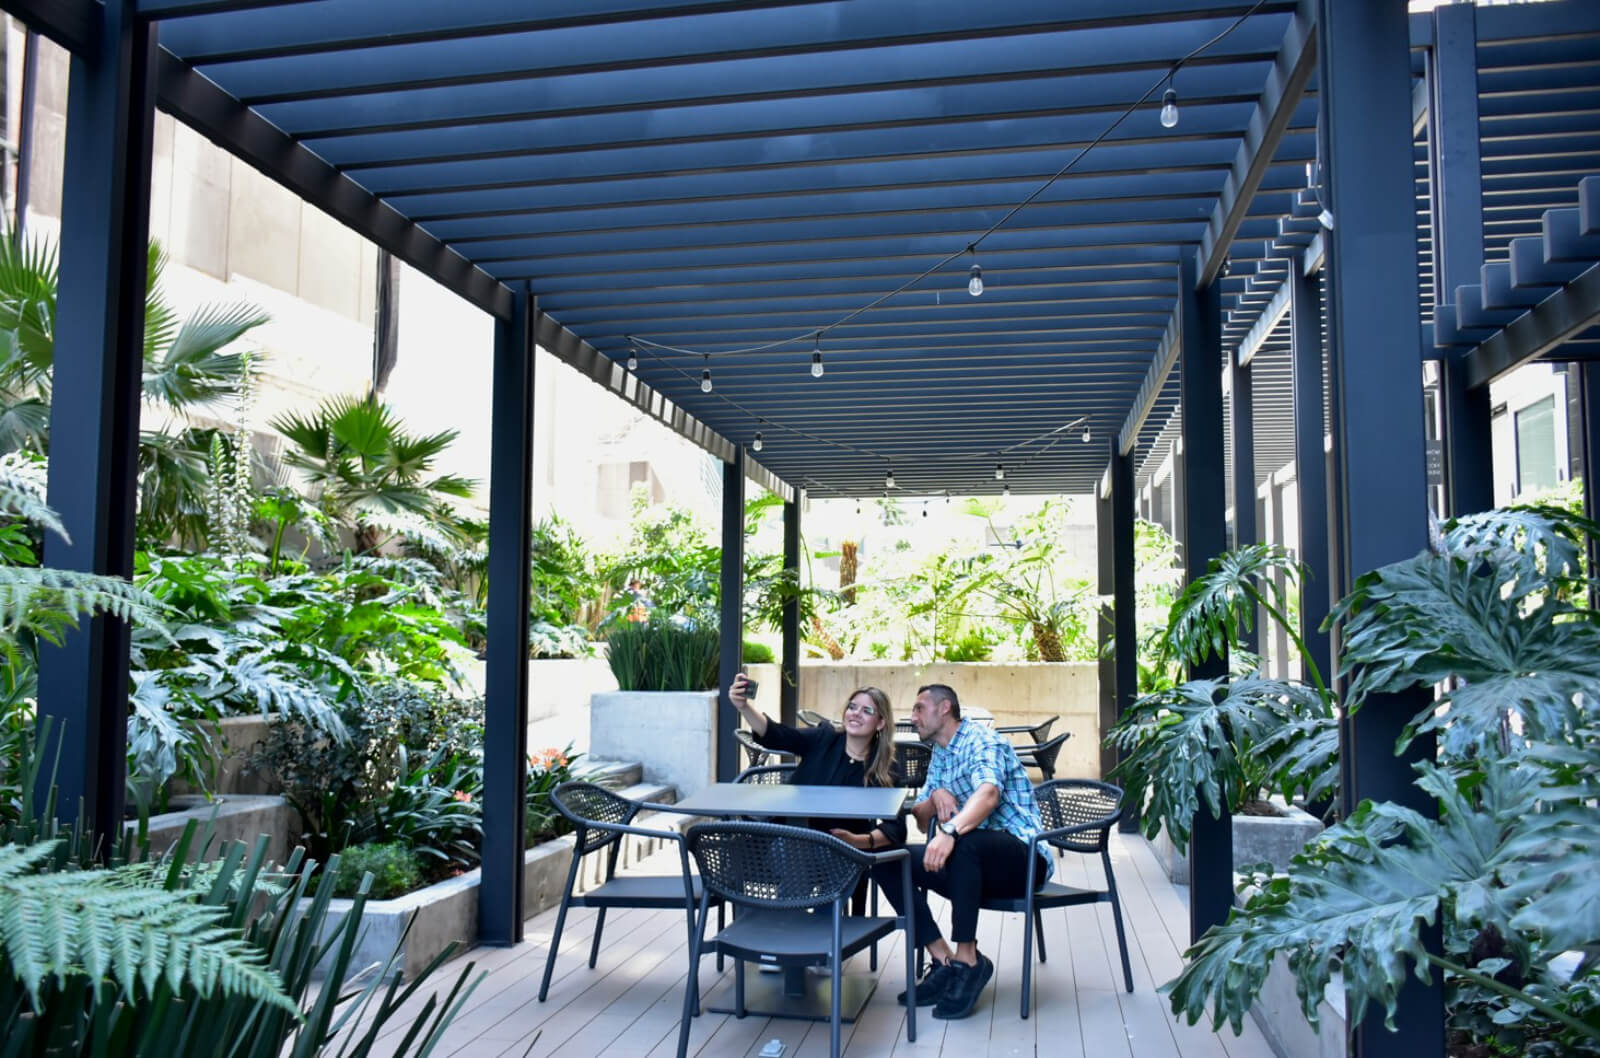 Departamento con terraza techada de 10m2, doble altura, alberca climatizada, cafeteria, sky lounge, pre-consruccion-venta San Angel Ciudad d